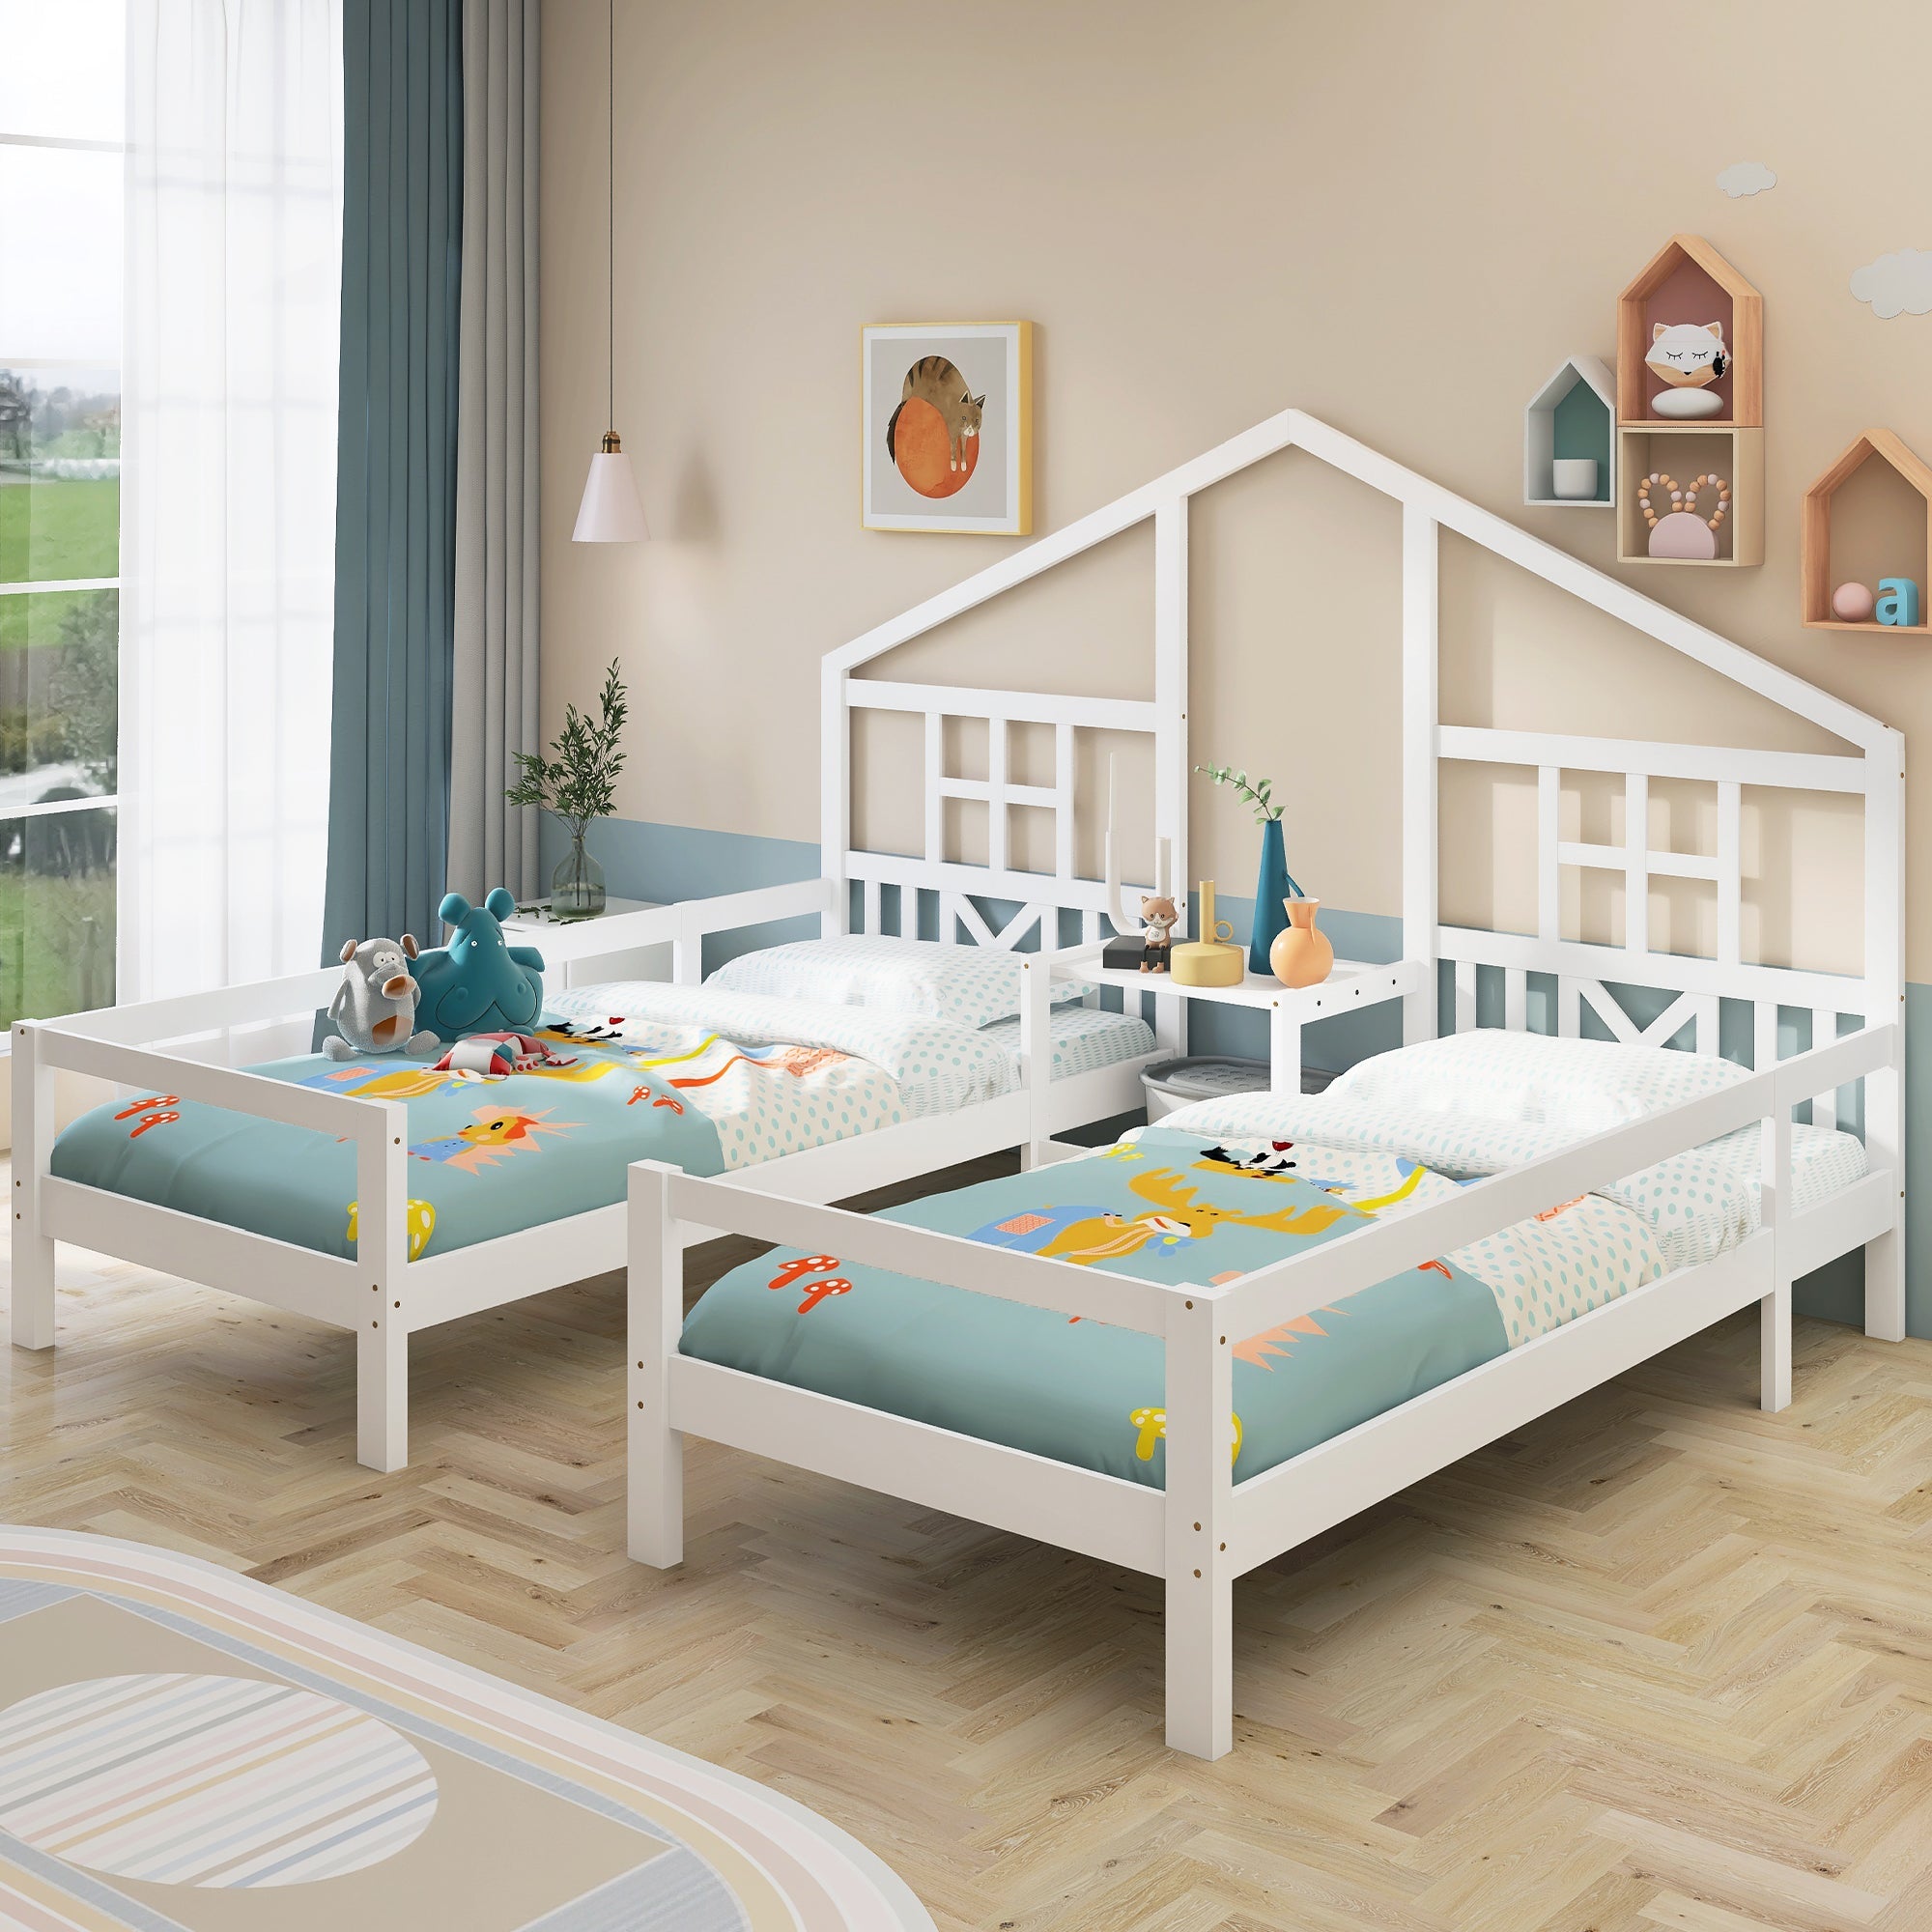 Hausbett, Doppelbett, Kinderbett mit Tisch, Rahmen aus Kiefernholz, weiß (90x200cm*2)